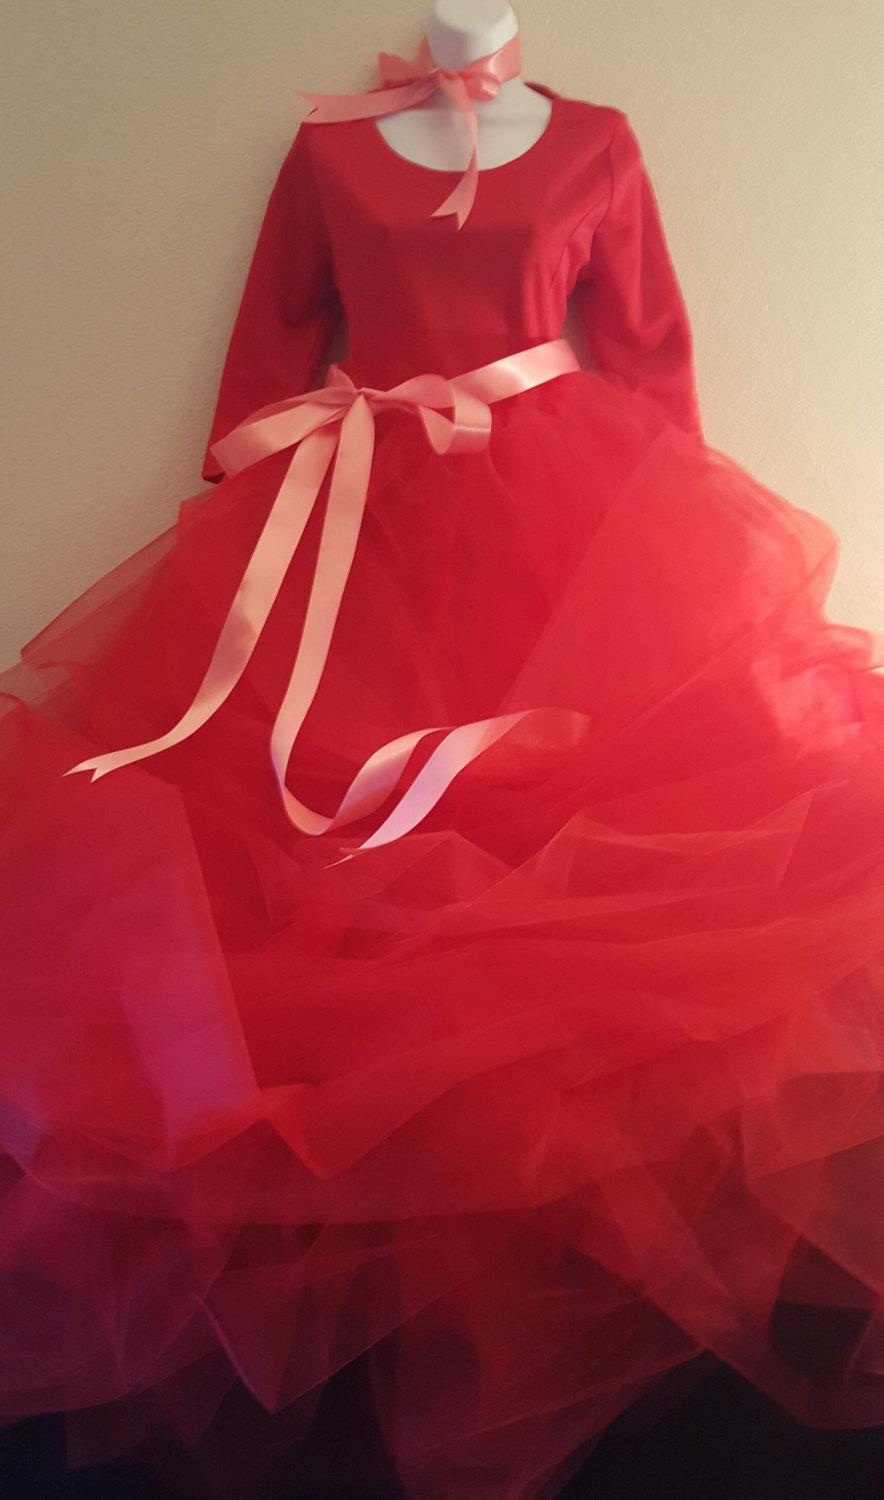 زفاف - Sample Gown Listing/Romantic Grace Kelly Inspired Red 3/4 Sleeve Tulle Ball Gown Dress Bridal Wedding Gown Party Costume